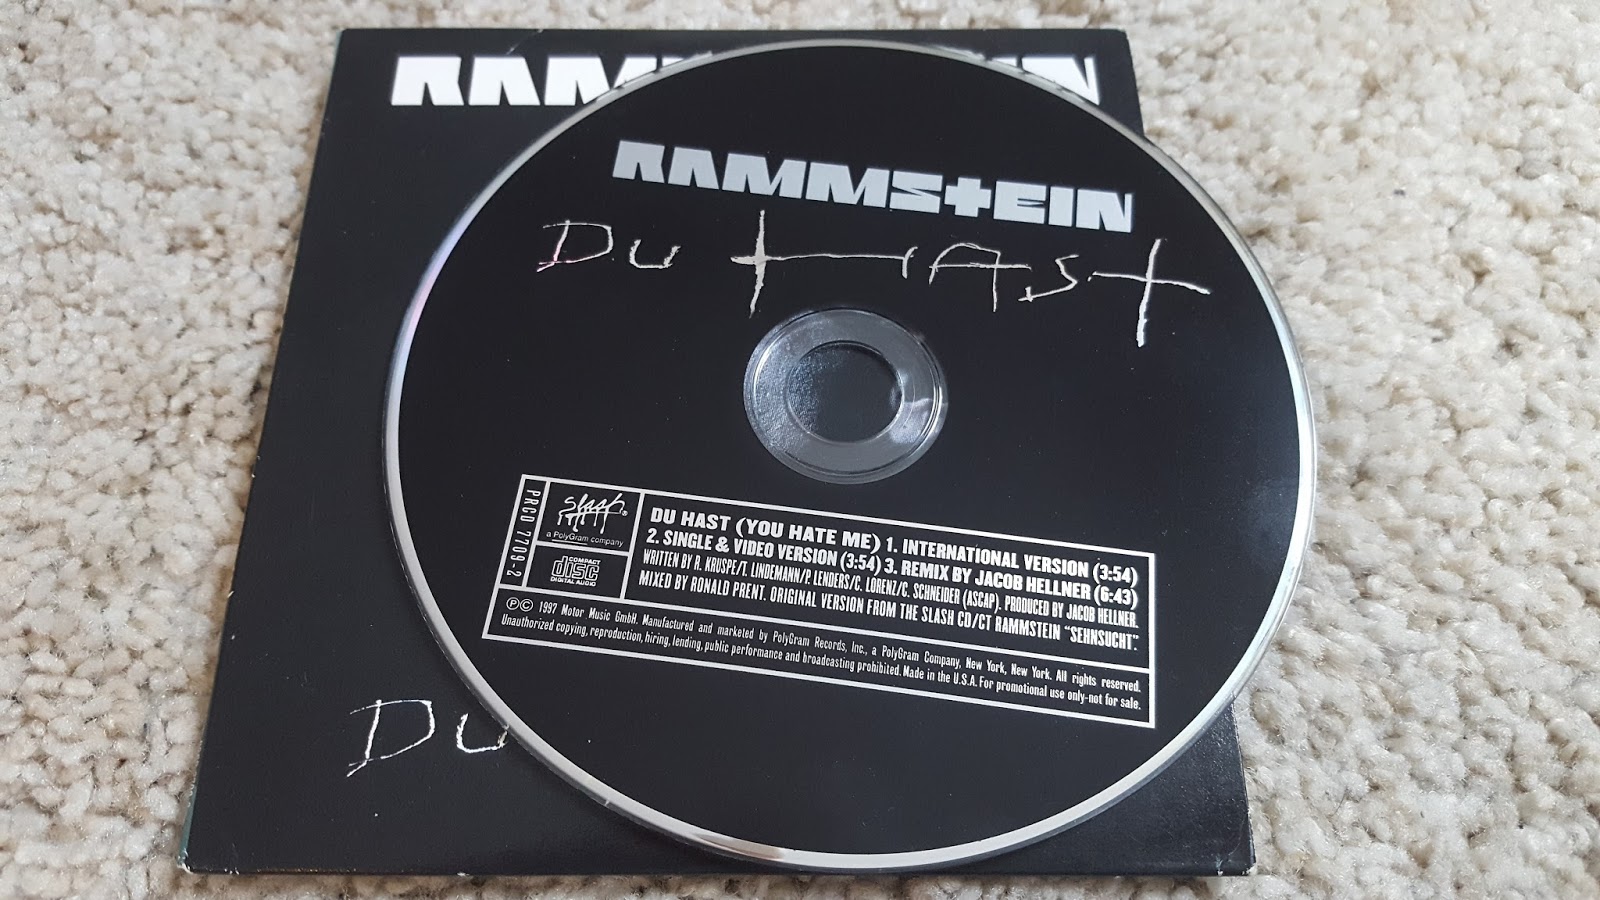 Текст песни рамштайн ду. Винил Rammstein коллекция. Рамштайн альбомы пластинки. Rammstein Virgin пластинка. Rammstein Deutschland обложка винил.